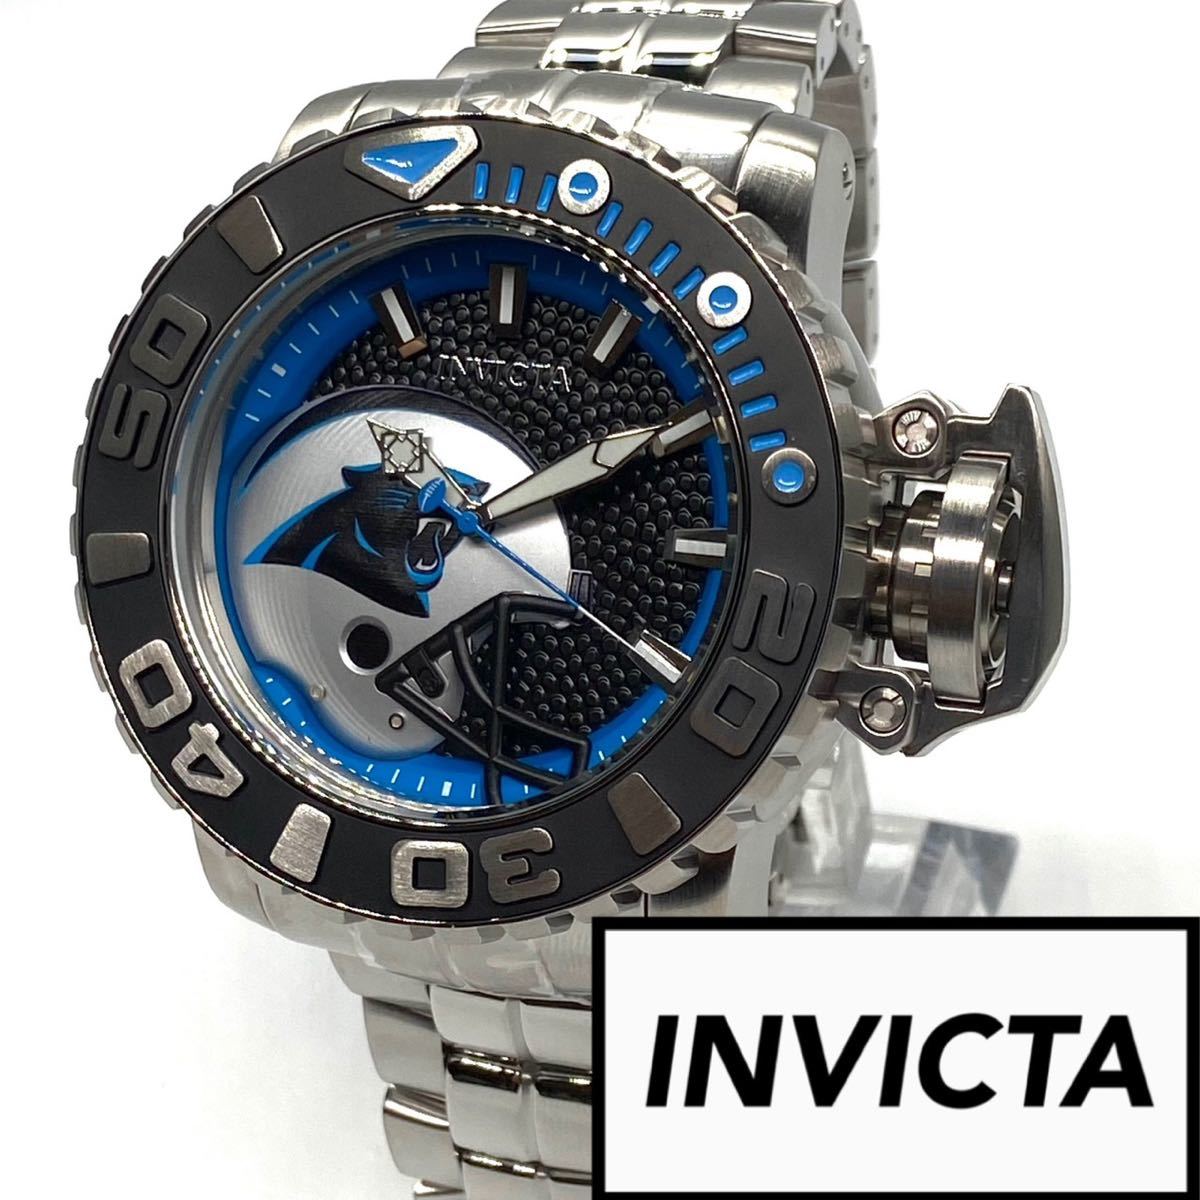 ●激レア商品! invicta インビクタ シーハンター メンズ a 高級品 腕時計(アナログ) オンラインストア最激安